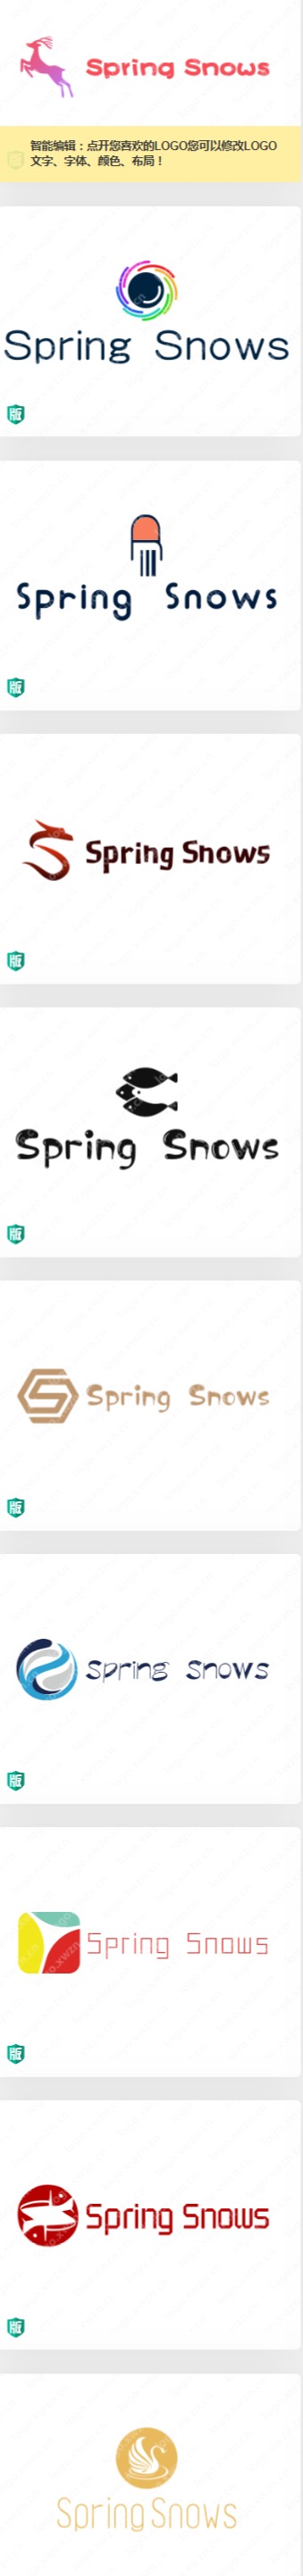 英文名“Spring Snows”logo设计作品合集